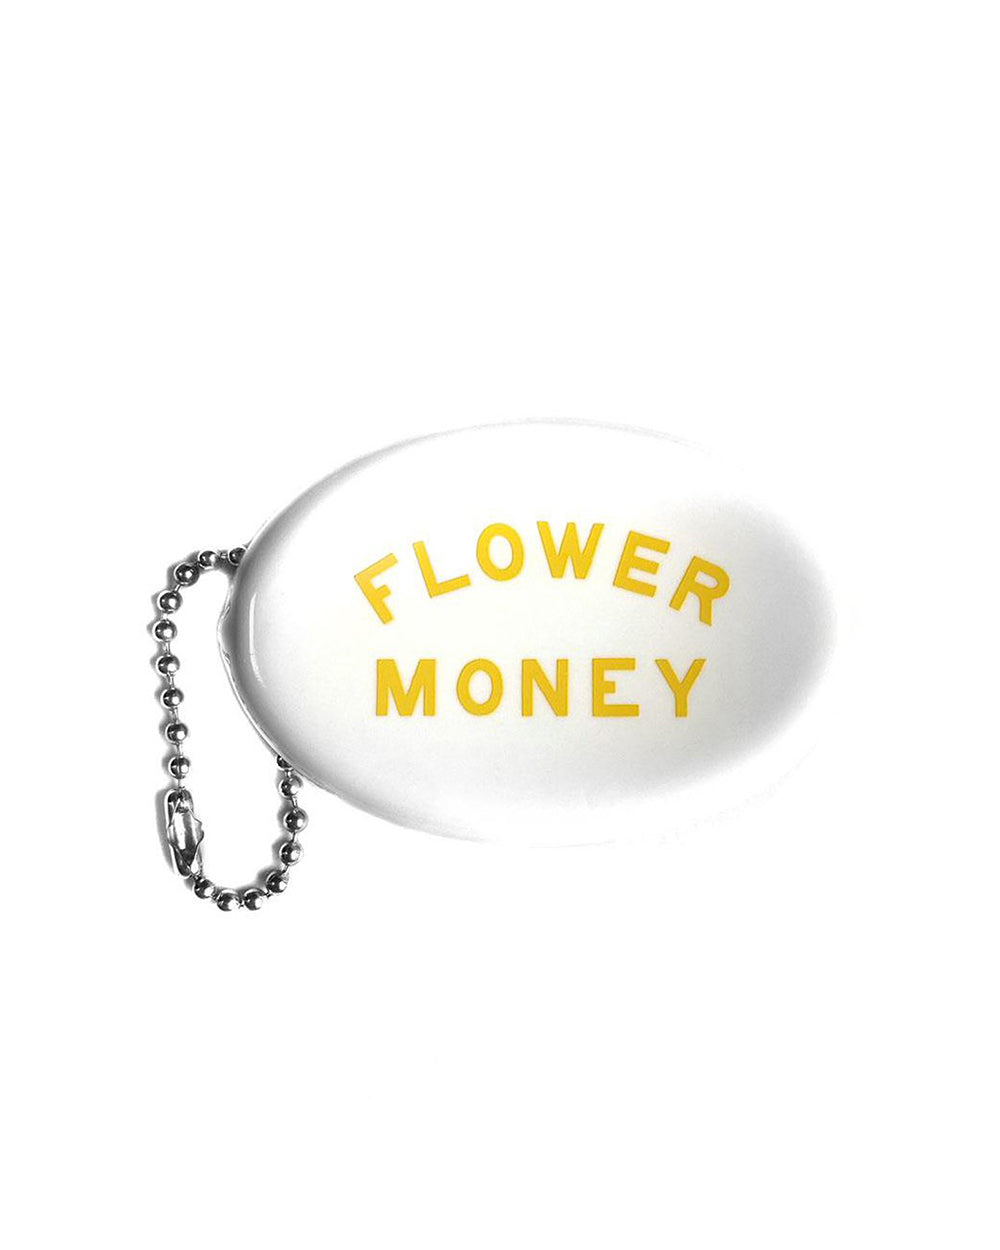 Retro "Flower Money" Coin Pouch